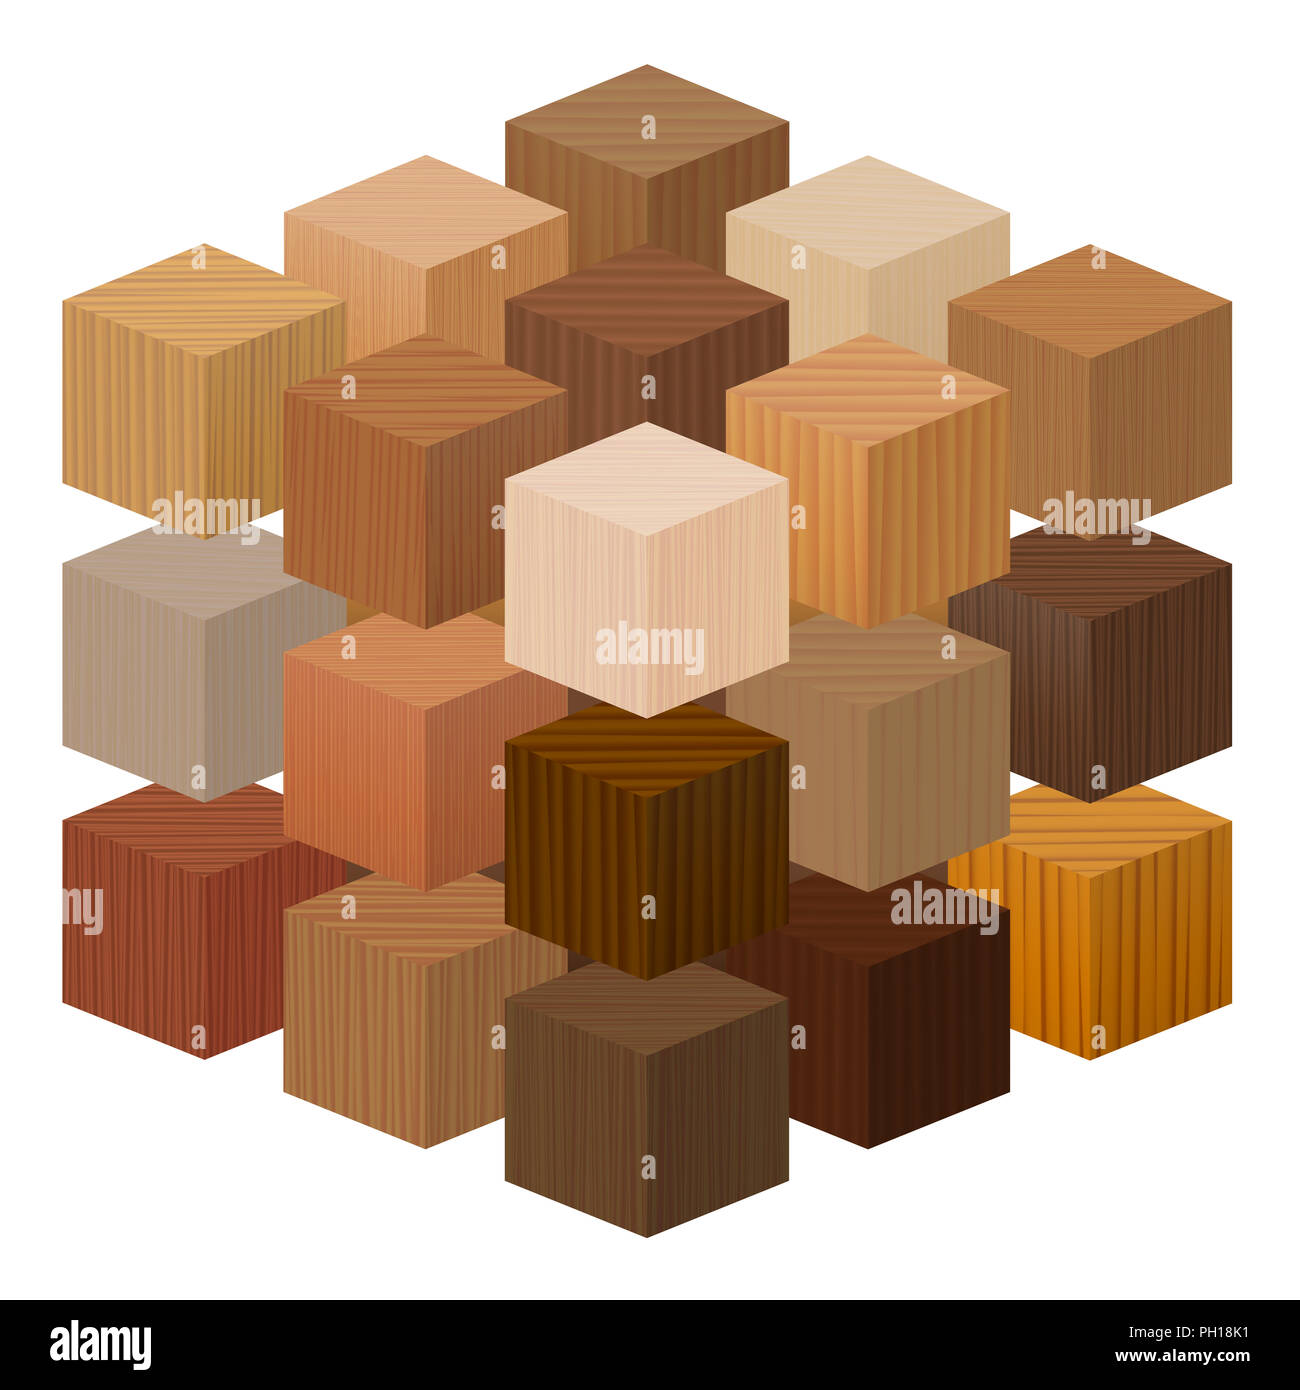 Cubi di legno formando una grande falegnameria artistica artwork - campioni di legno con diverse texture, colori, smalti, da vari alberi. Foto Stock